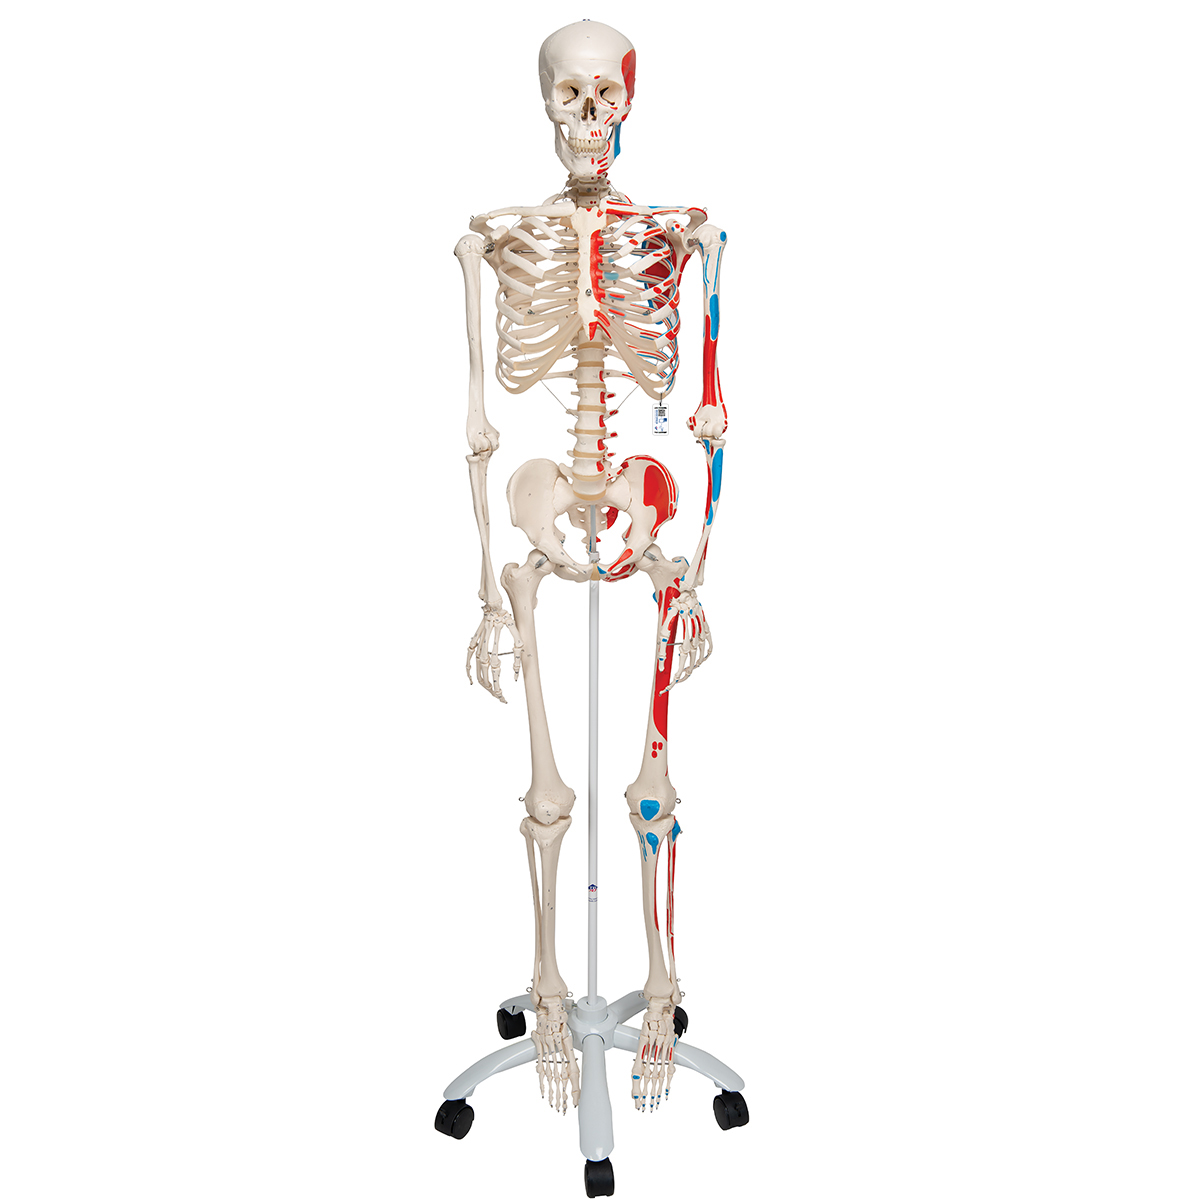 Menschliches Skelett Modell "Max", lebensgroß mit Muskeldarstellung, auf Metallstativ mit Rollen - 3B Smart Anatomy